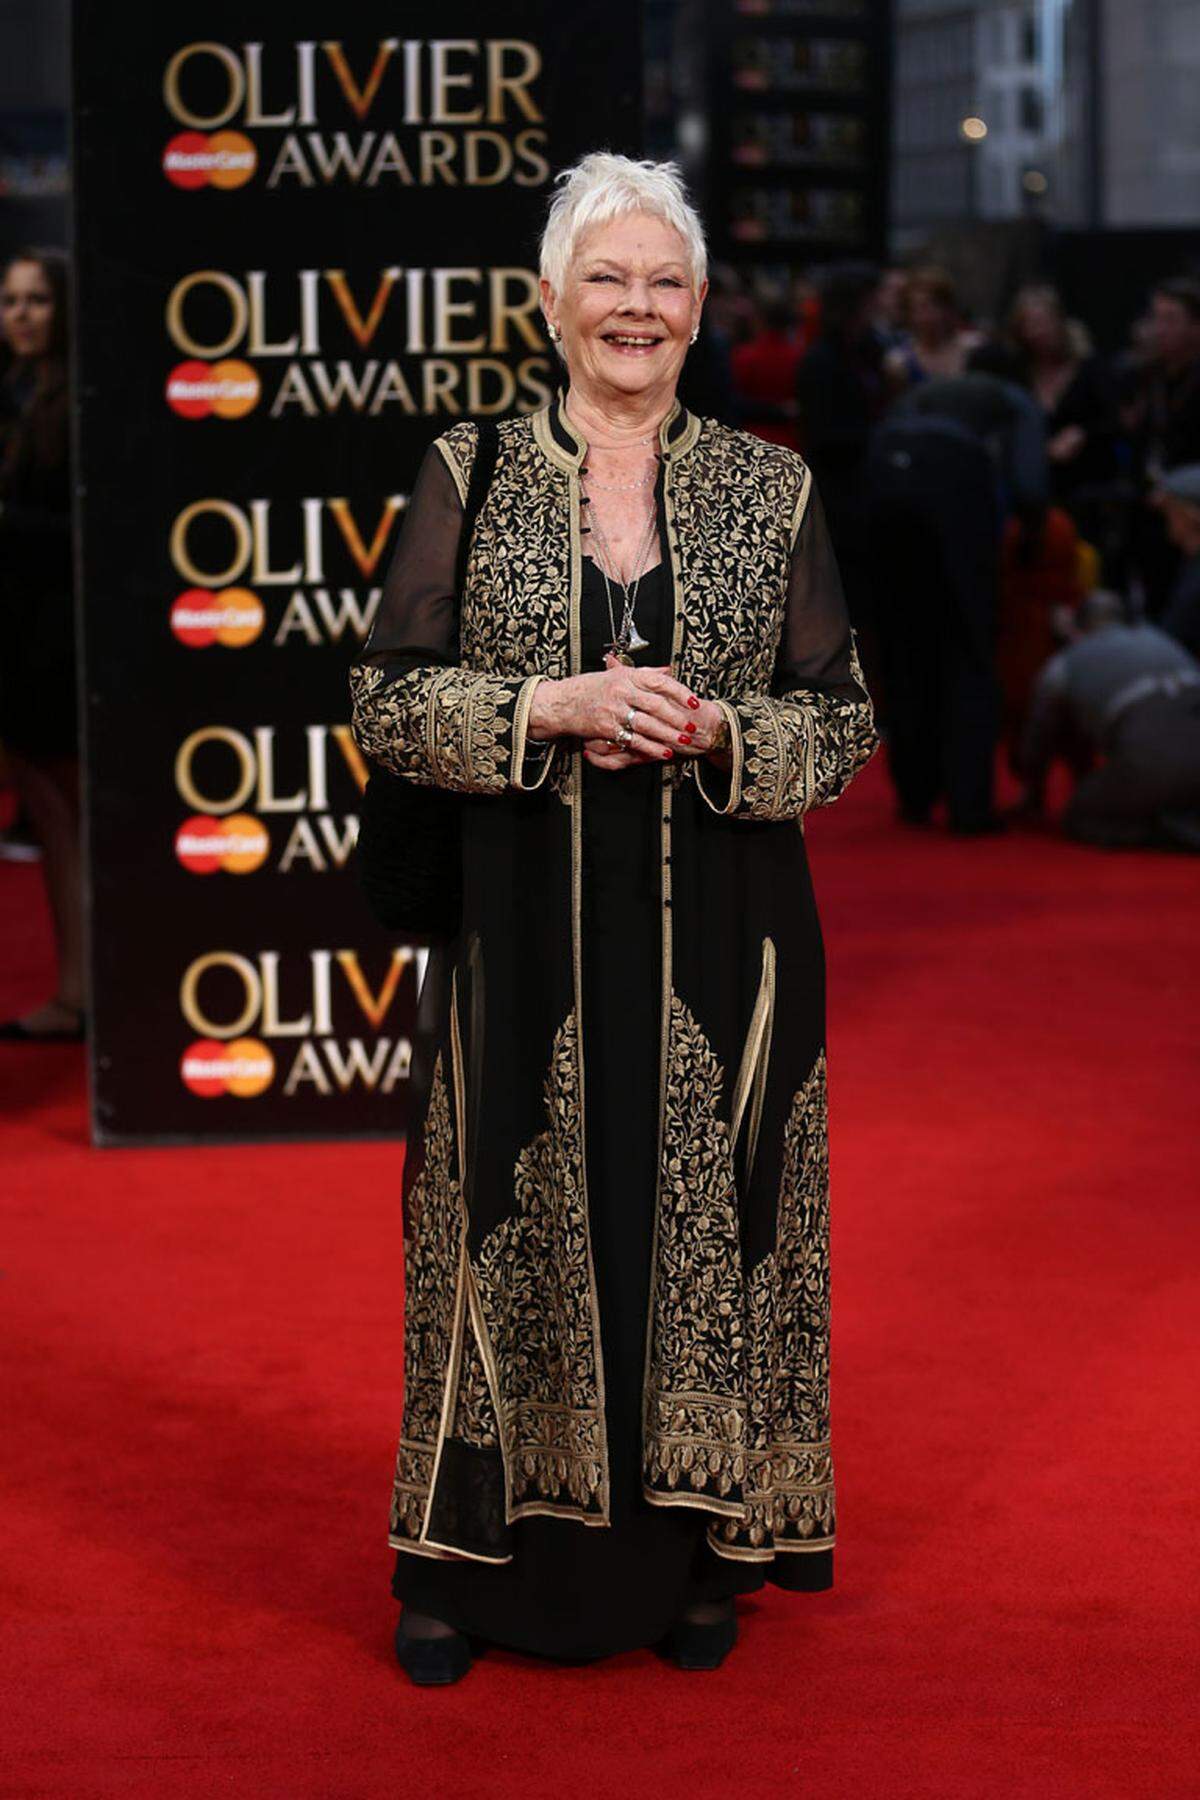 Zum achten Mal erhielt Judi Dench einen Olivier Award. Die 81-Jährige konnte sich in einem orientalisch angehauchten Abendensemble sehen lassen.